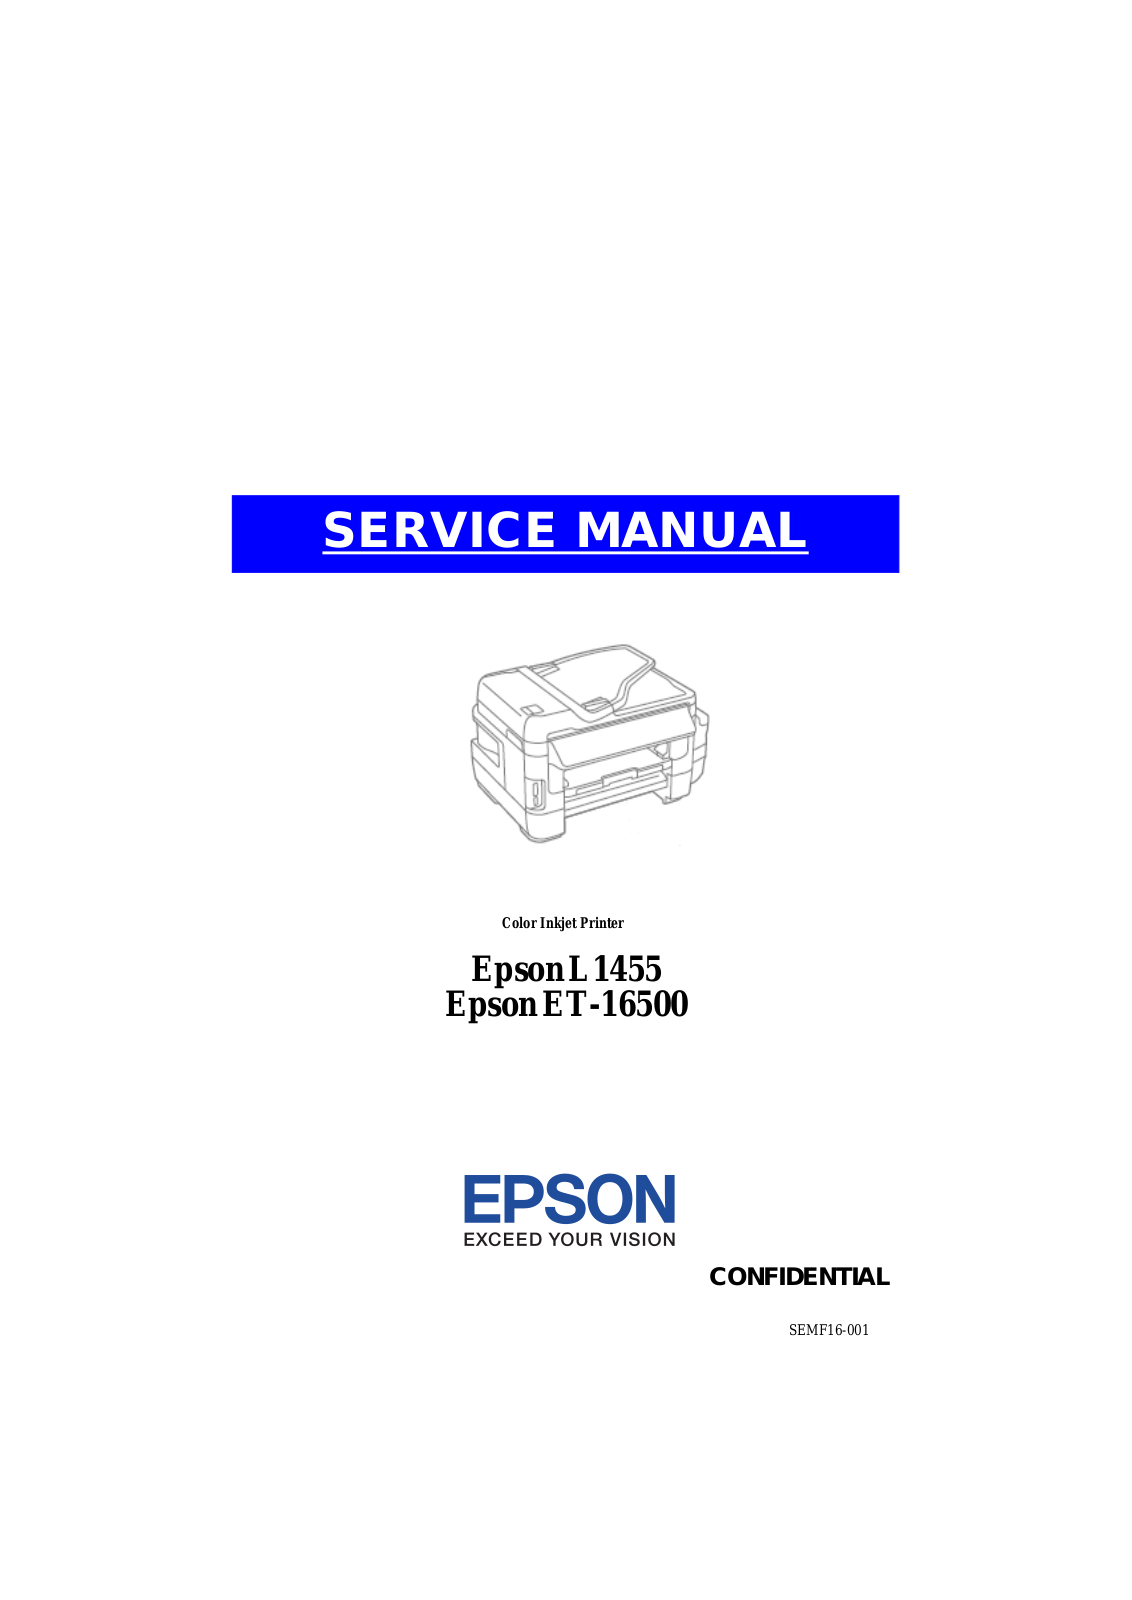 EPSON L1455, ET-16500 Service Manual